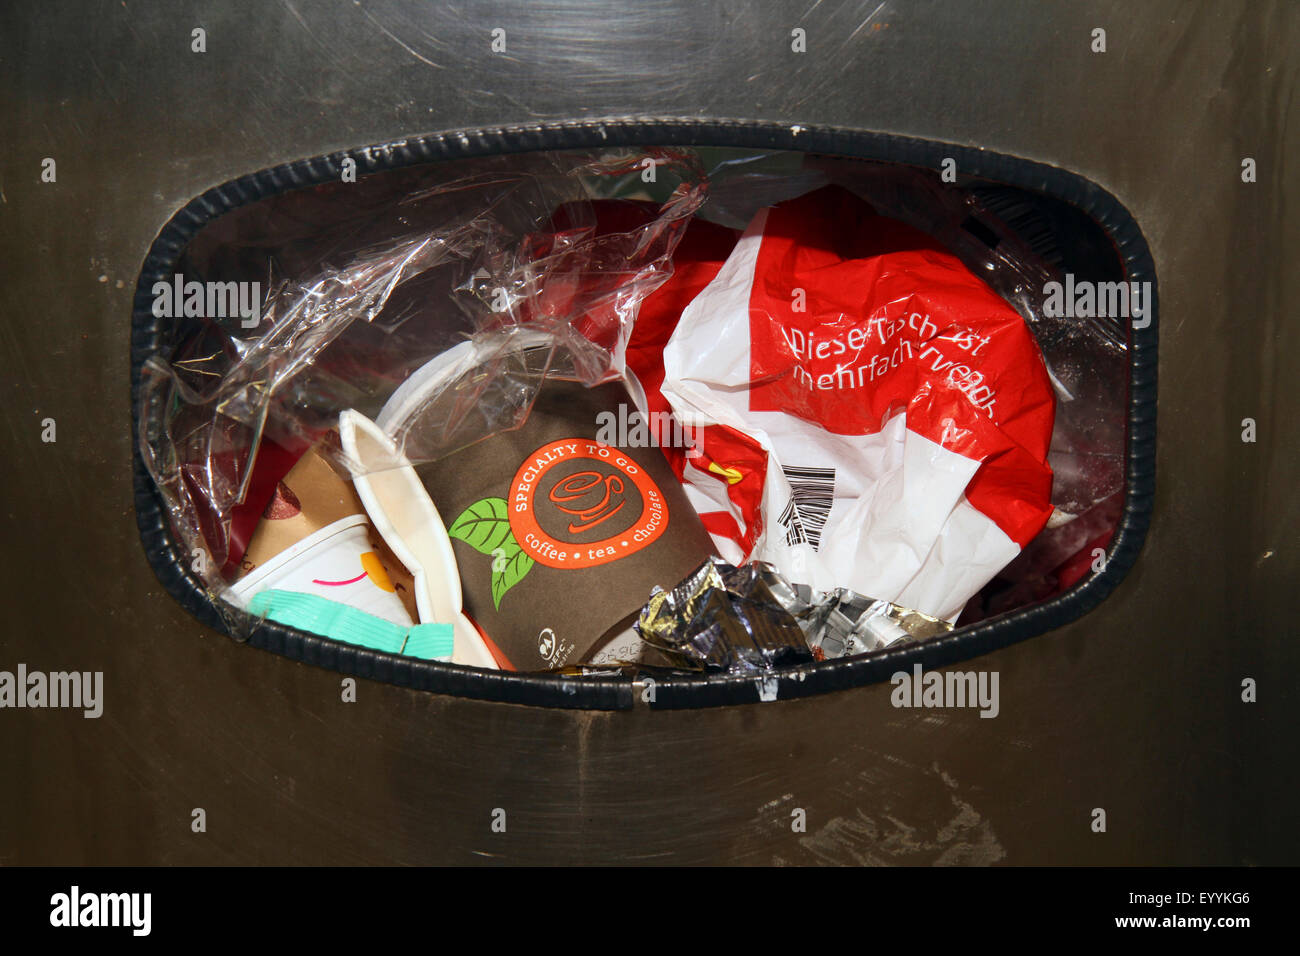 public waste bin, Germany Stock Photo